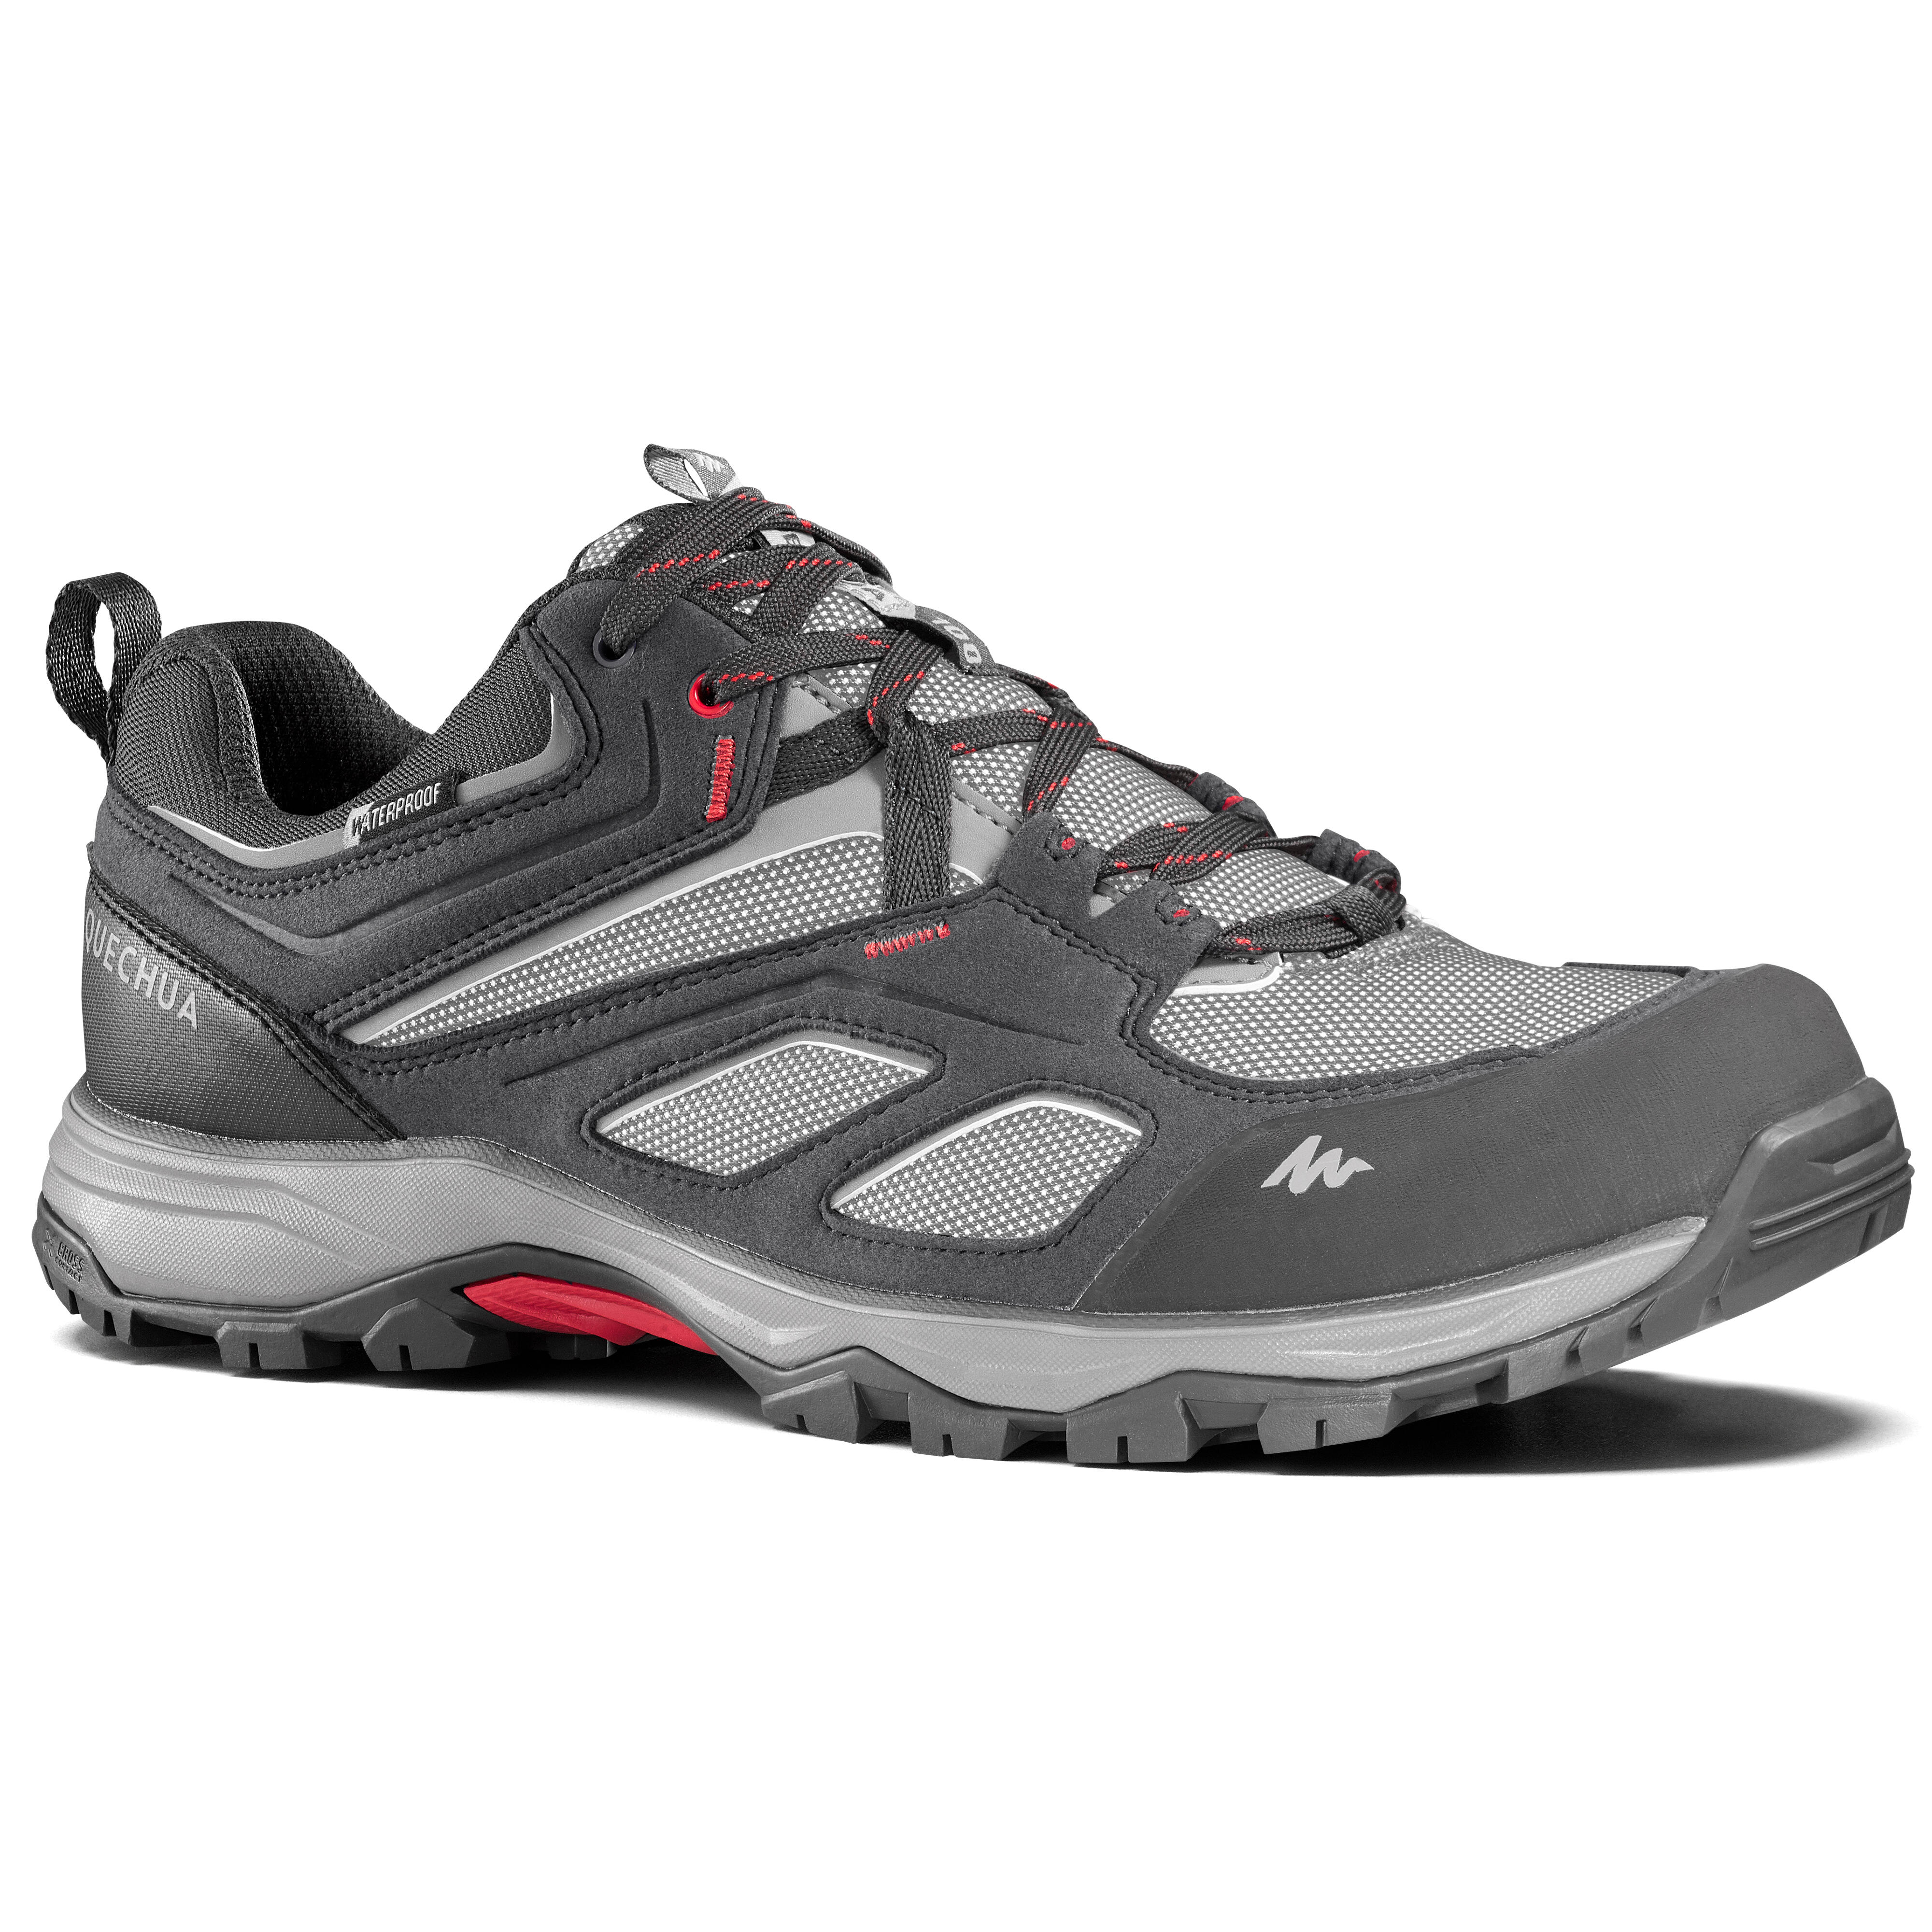 QUECHUA Chaussures imperméables de randonnée montagne - MH100 Gris - Homme - QUECHUA - 41